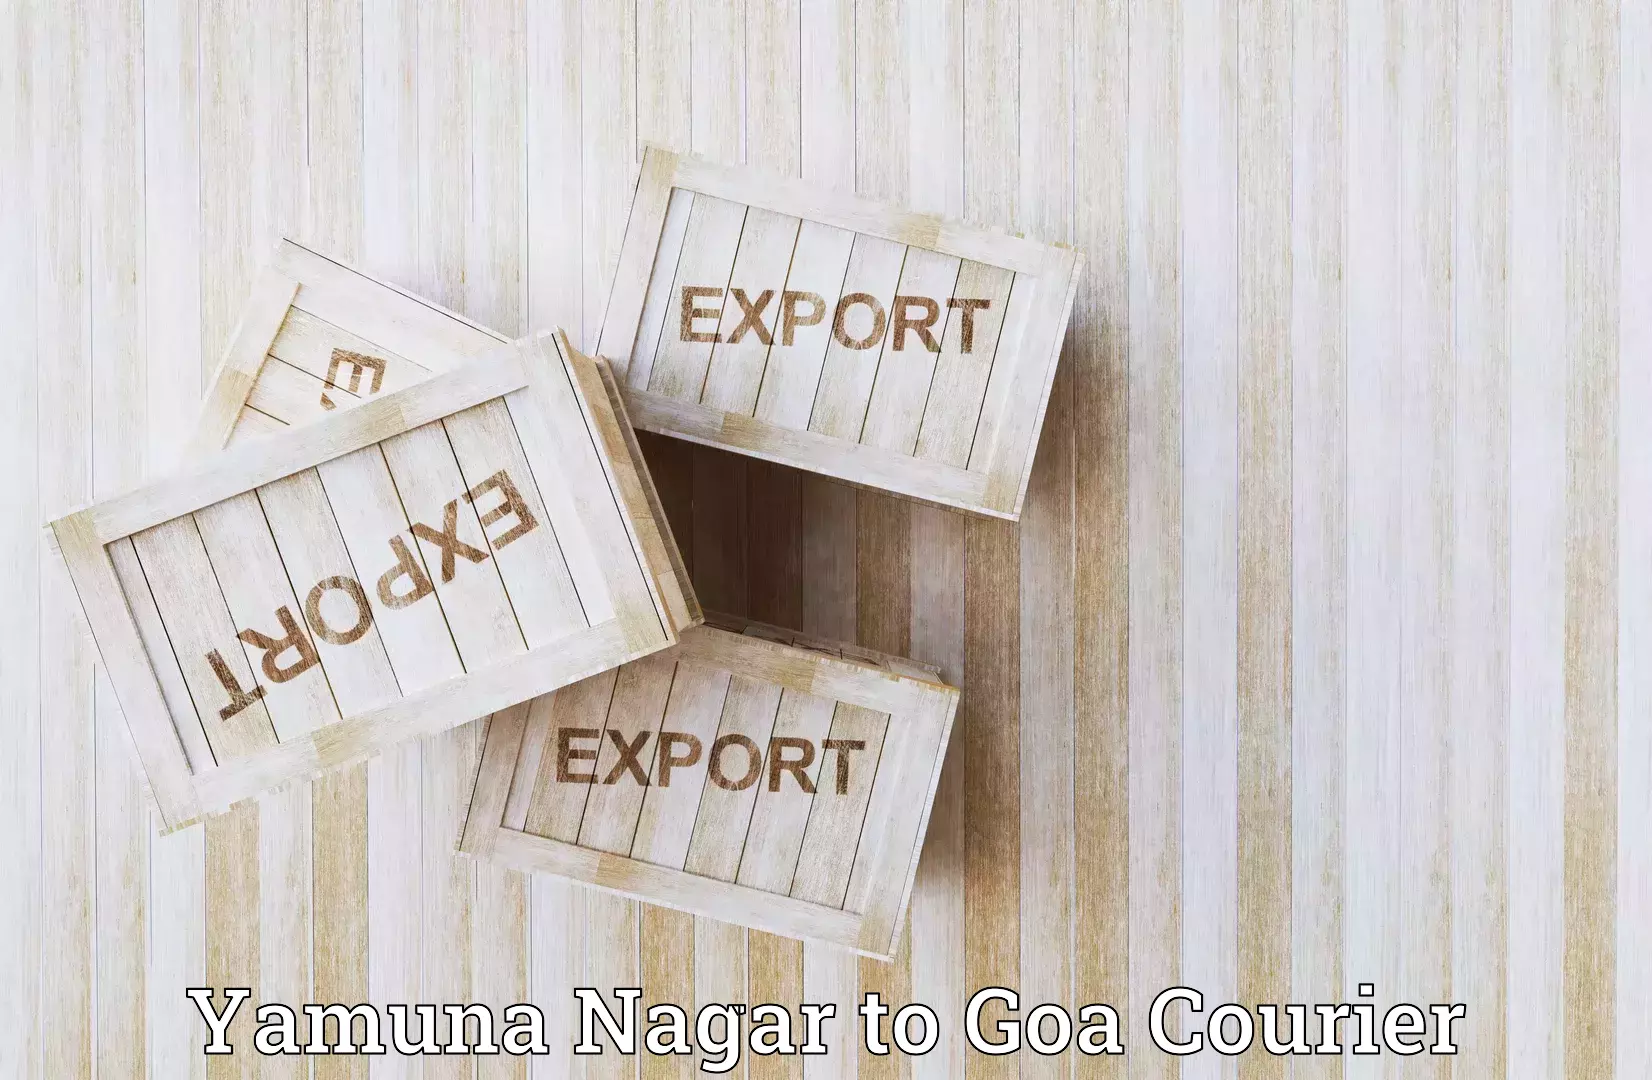 Global shipping networks Yamuna Nagar to Panaji